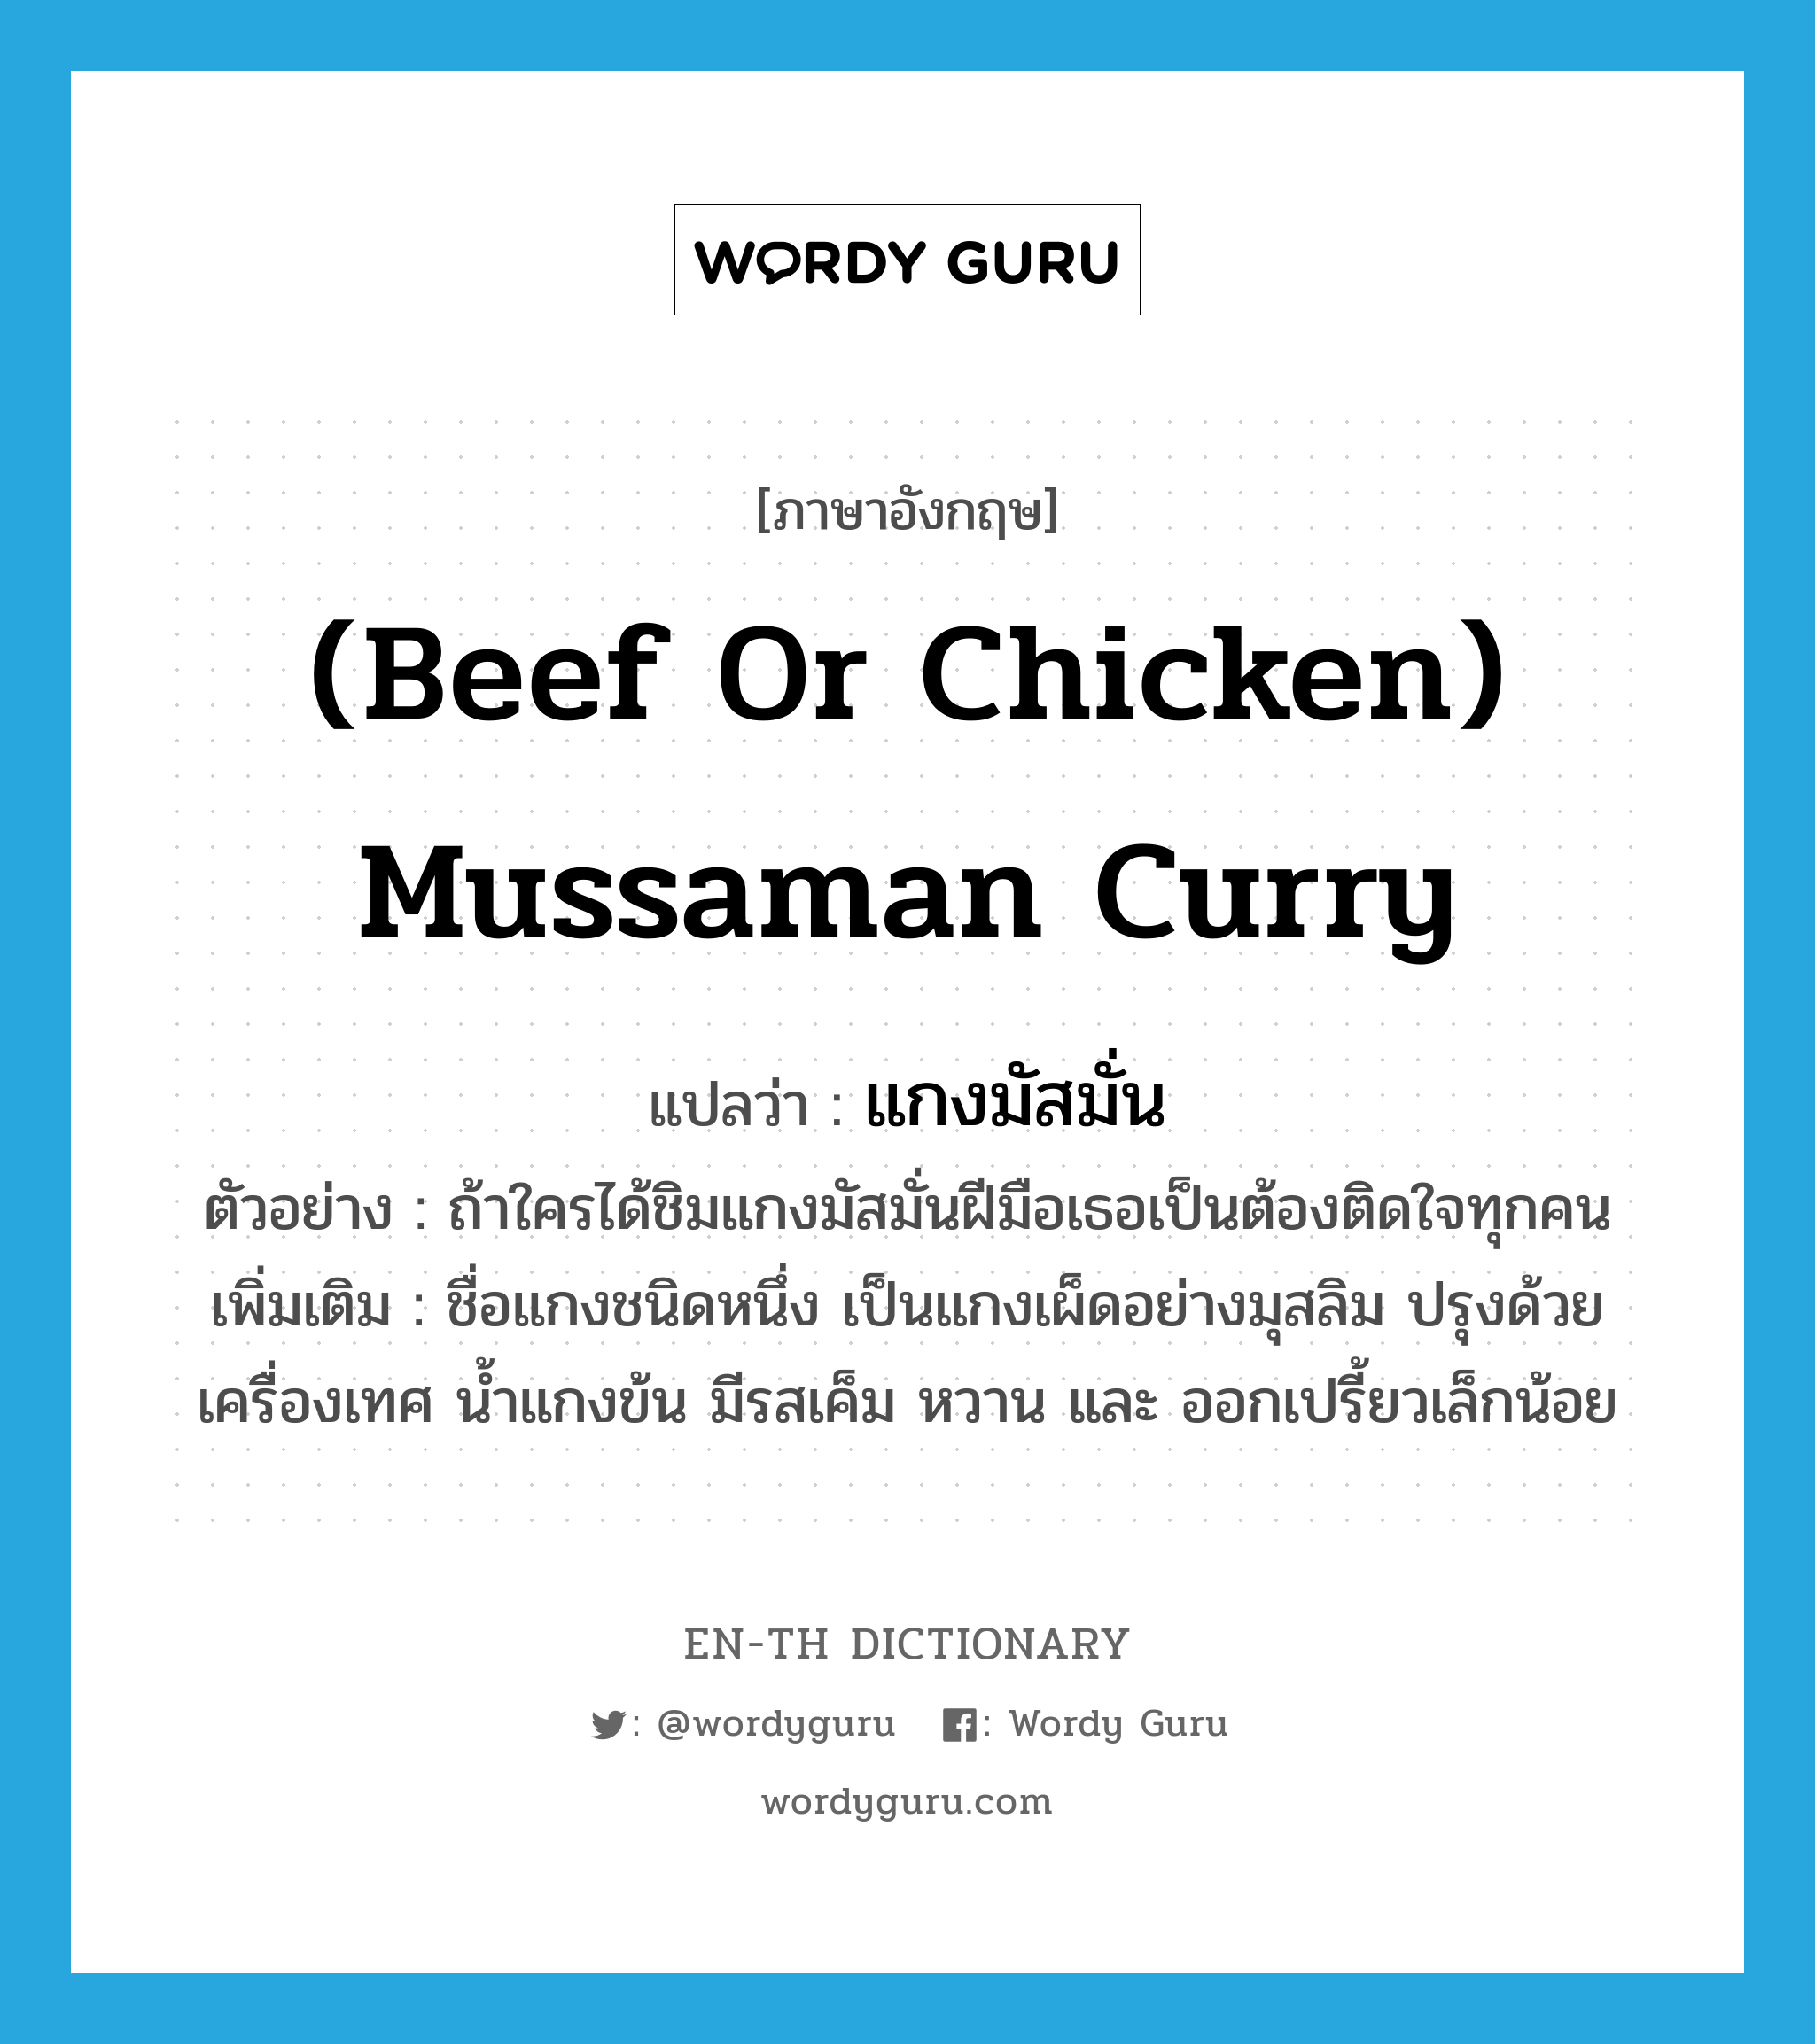 แกงมัสมั่น ภาษาอังกฤษ?, คำศัพท์ภาษาอังกฤษ แกงมัสมั่น แปลว่า (beef or chicken) mussaman curry ประเภท N ตัวอย่าง ถ้าใครได้ชิมแกงมัสมั่นฝีมือเธอเป็นต้องติดใจทุกคน เพิ่มเติม ชื่อแกงชนิดหนึ่ง เป็นแกงเผ็ดอย่างมุสลิม ปรุงด้วยเครื่องเทศ น้ำแกงข้น มีรสเค็ม หวาน และ ออกเปรี้ยวเล็กน้อย หมวด N